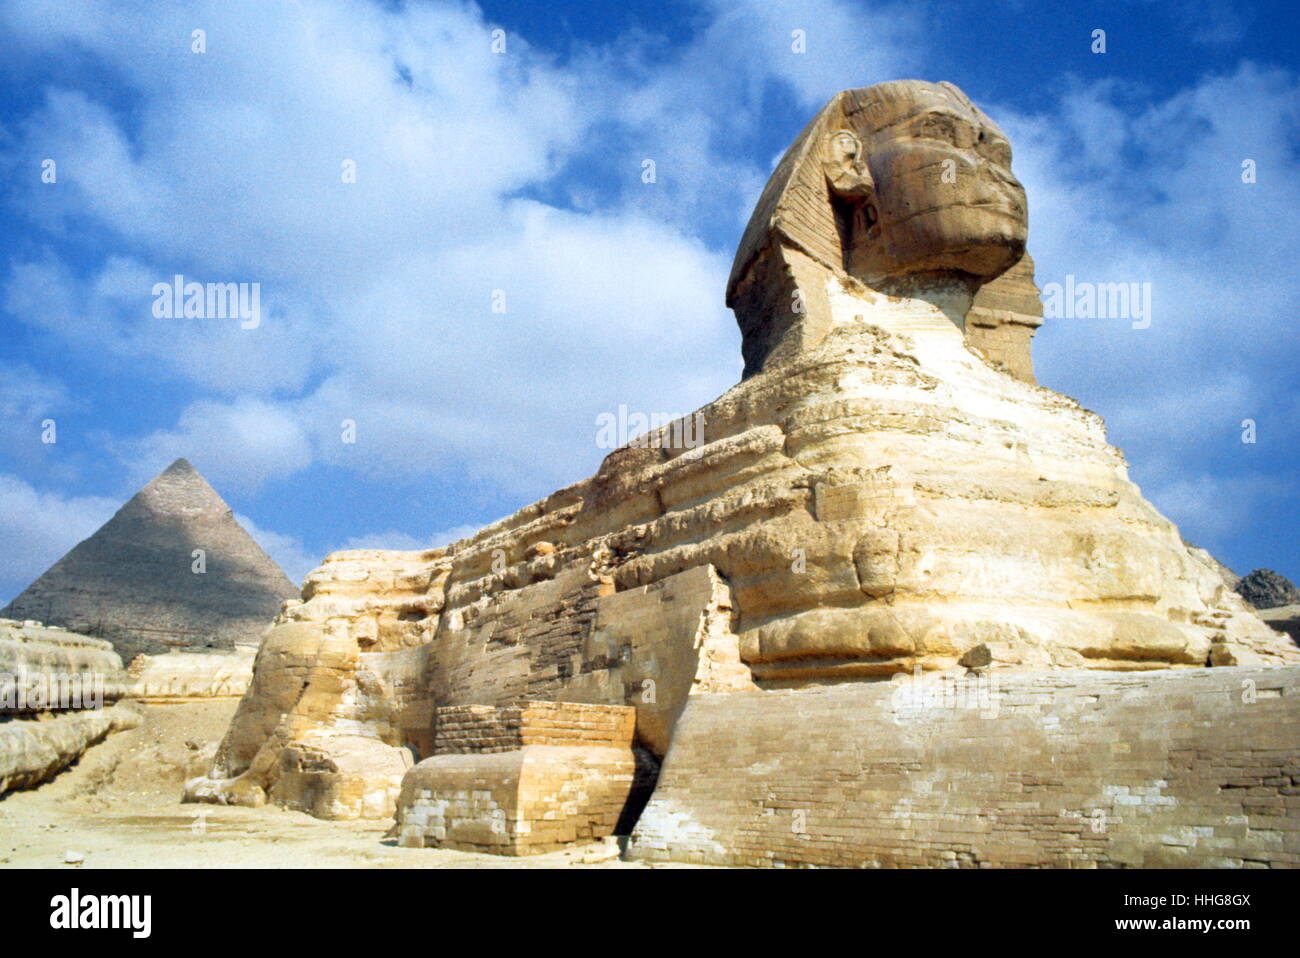 Le grand Sphinx de Gizeh, situé sur le plateau de Gizeh à proximité les grandes pyramides de Gizeh, sur la rive ouest du Nil. La date de sa construction est incertaine, le chef de la Grand Sphinx est maintenant que l'on croit être du pharaon Khafra. Khafra (lire également comme Khafré, Khefren et Khéphren) est un pharaon de la Ive dynastie, 2570 AV. Banque D'Images